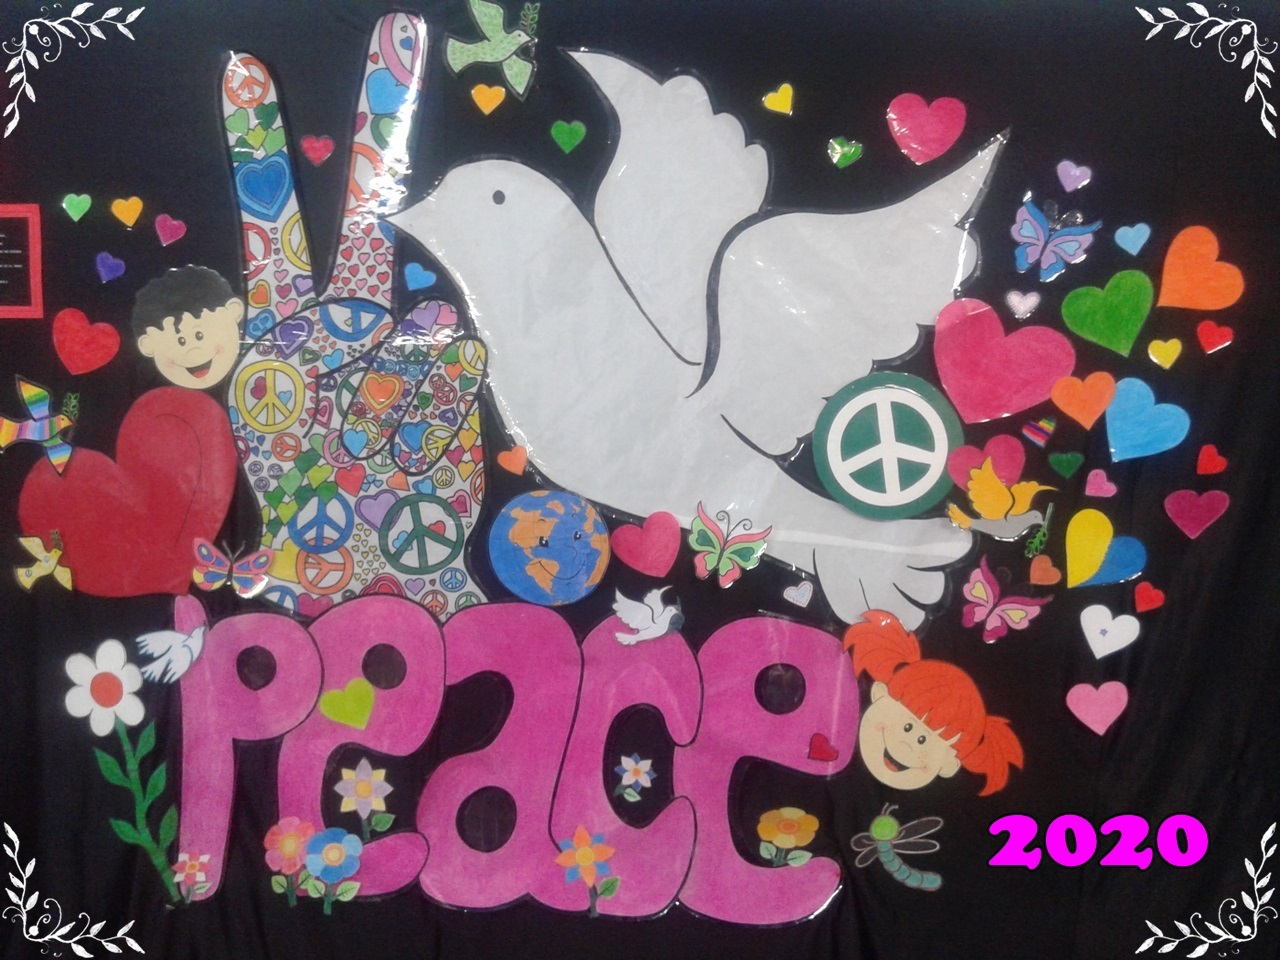 Paz 2020